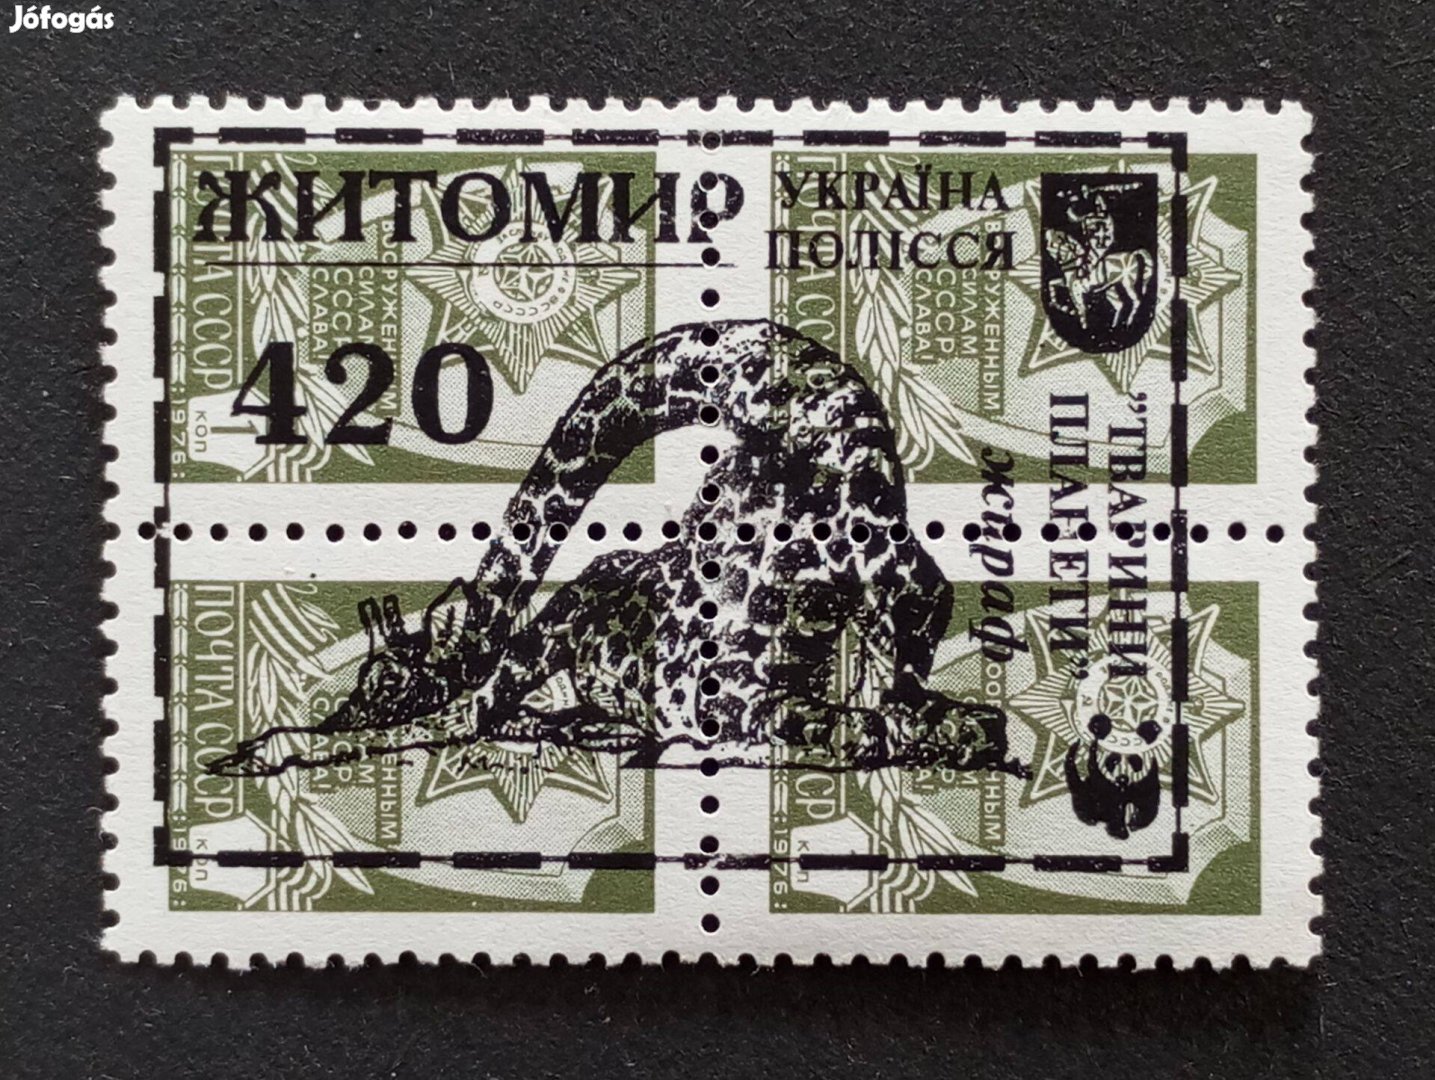 1976-os végleges kiadás 1 kop postatiszta bélyeg 4 egyben Zsitomir